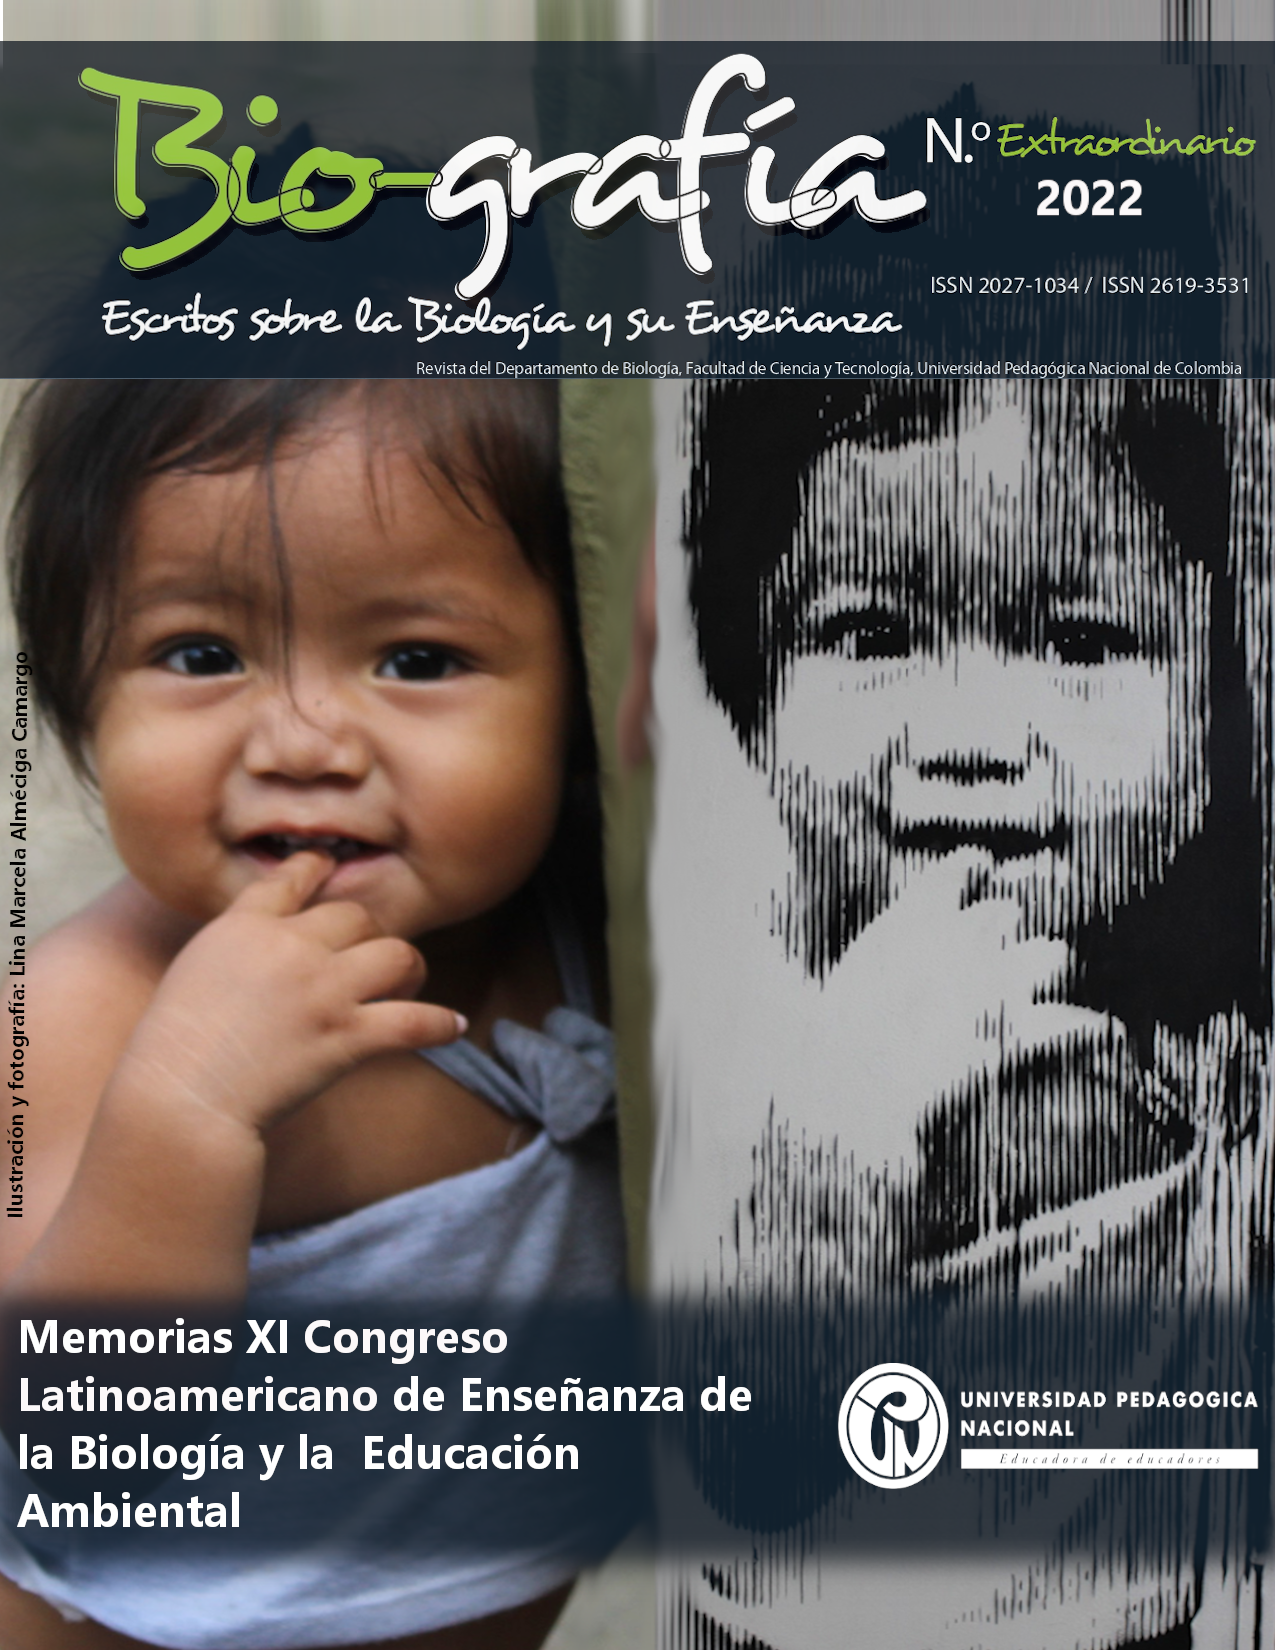 					Ver 2022: Memorias XI Congreso Latinoamericano de Enseñanza de la Biología y la Educación Ambiental
				